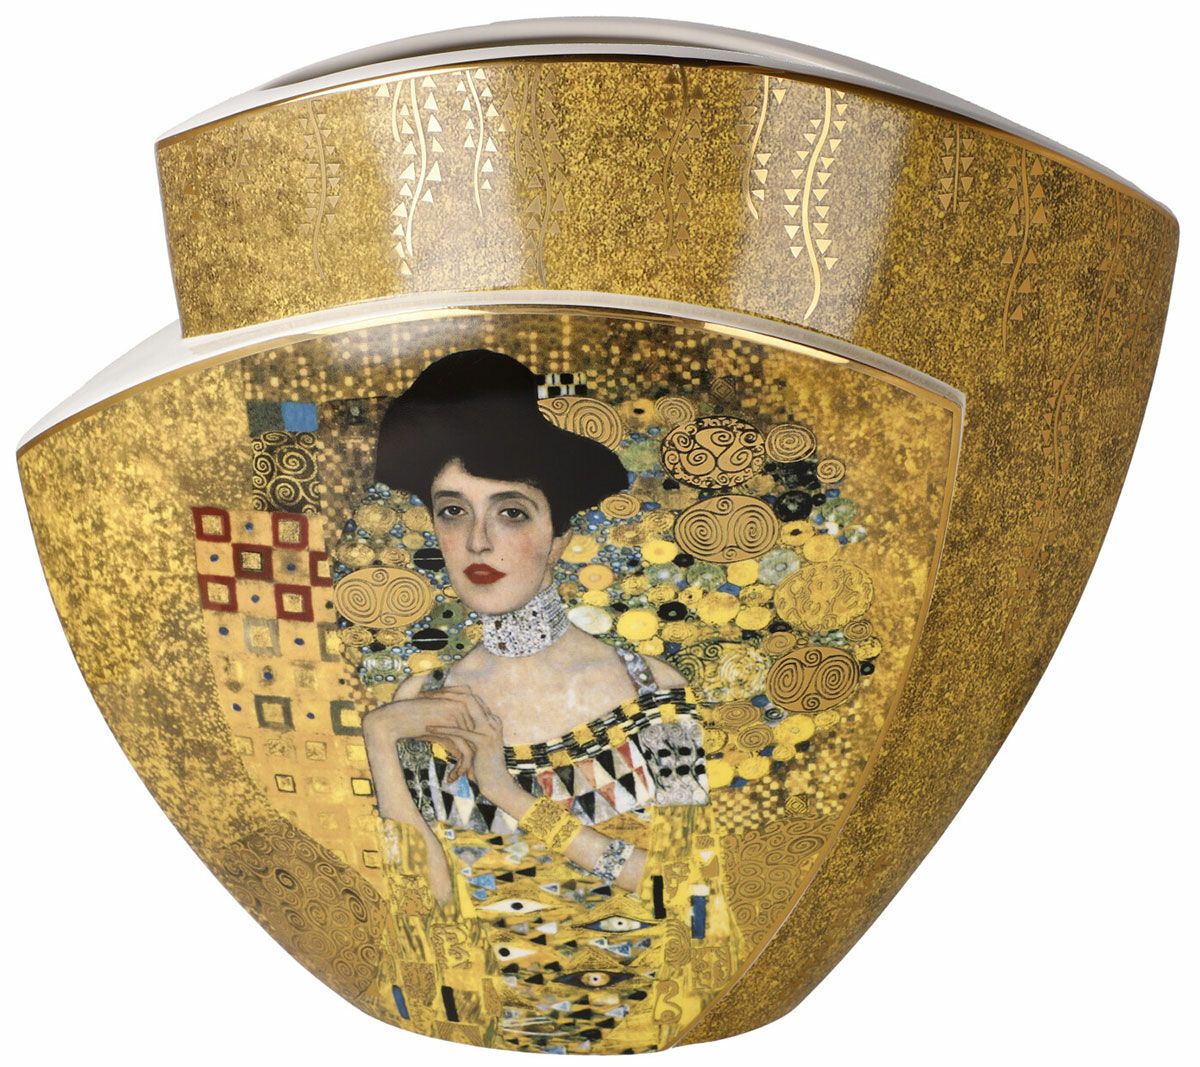 Doppelseitige Porzellanvase "Der Kuss / Adele Bloch-Bauer" mit Golddekor von Gustav Klimt